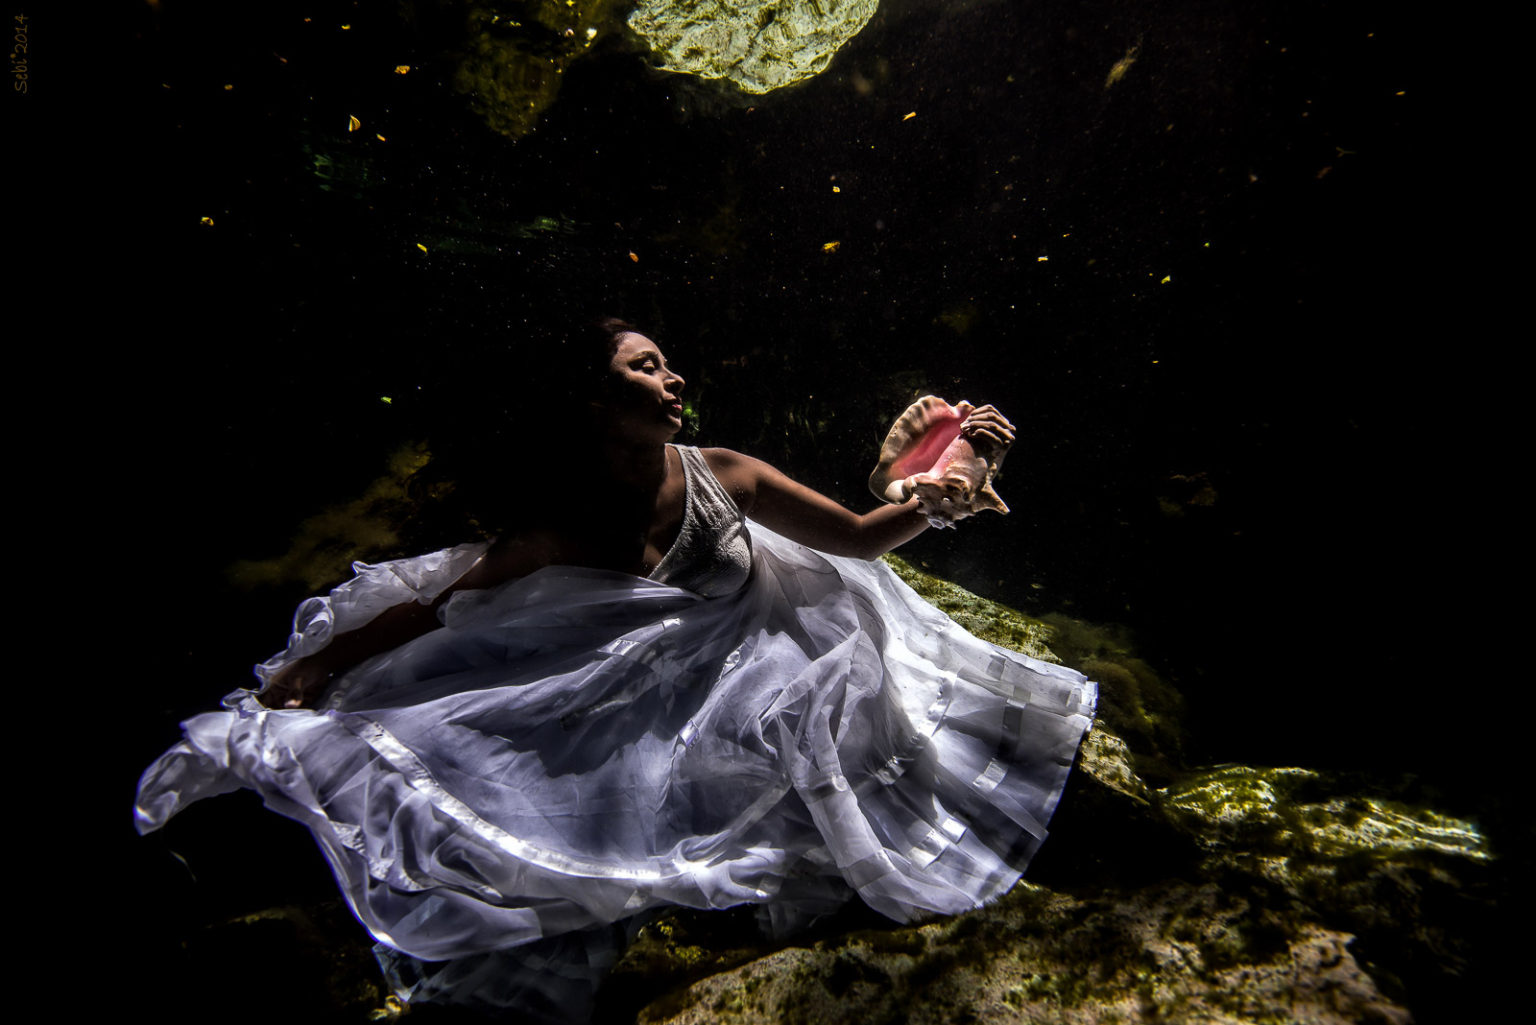 Underwater Cenote Trash The Dress - America And Italo